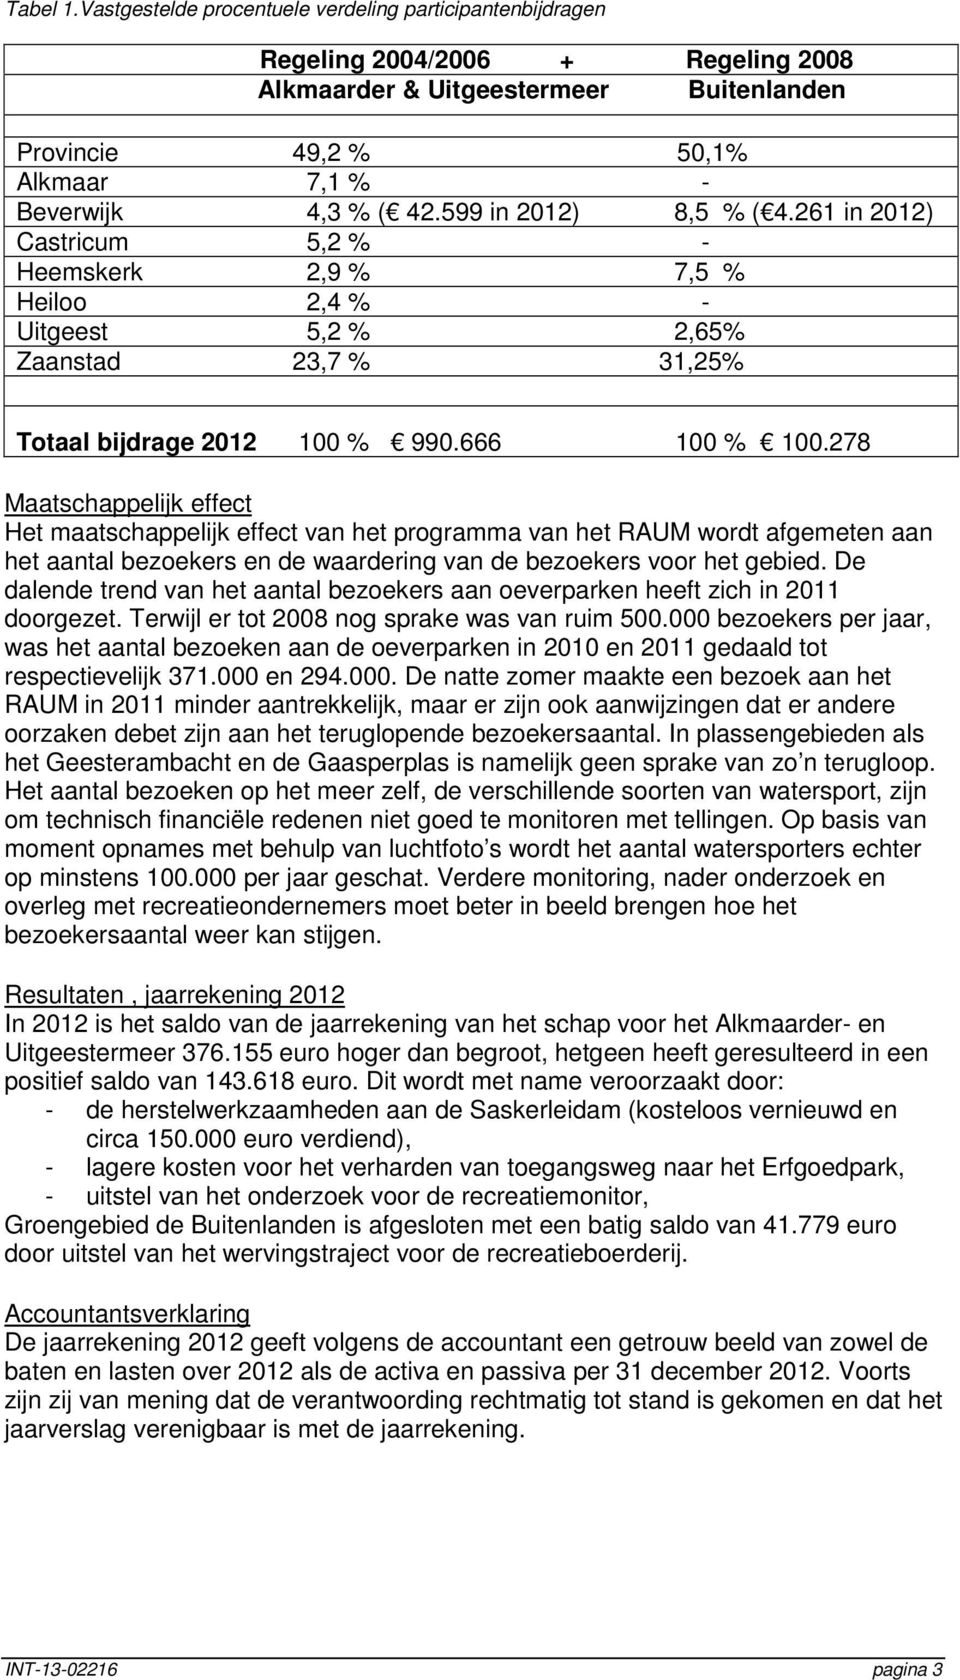 599 in 2012) 8,5 % ( 4.261 in 2012) Castricum 5,2 % - Heemskerk 2,9 % 7,5 % Heiloo 2,4 % - Uitgeest 5,2 % 2,65% Zaanstad 23,7 % 31,25% Totaal bijdrage 2012 100 % 990.666 100 % 100.